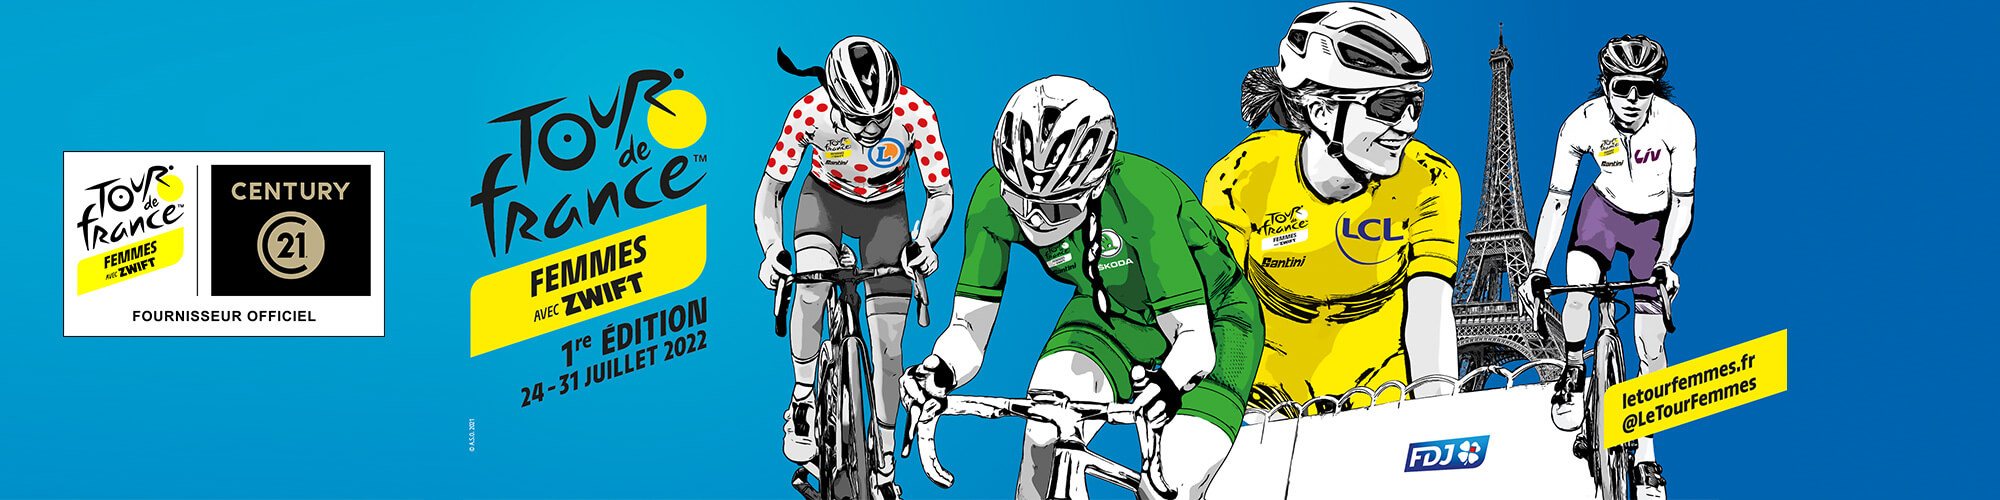 CENTURY 21 s’engage sur le Tour de France Femmes avec Zwift